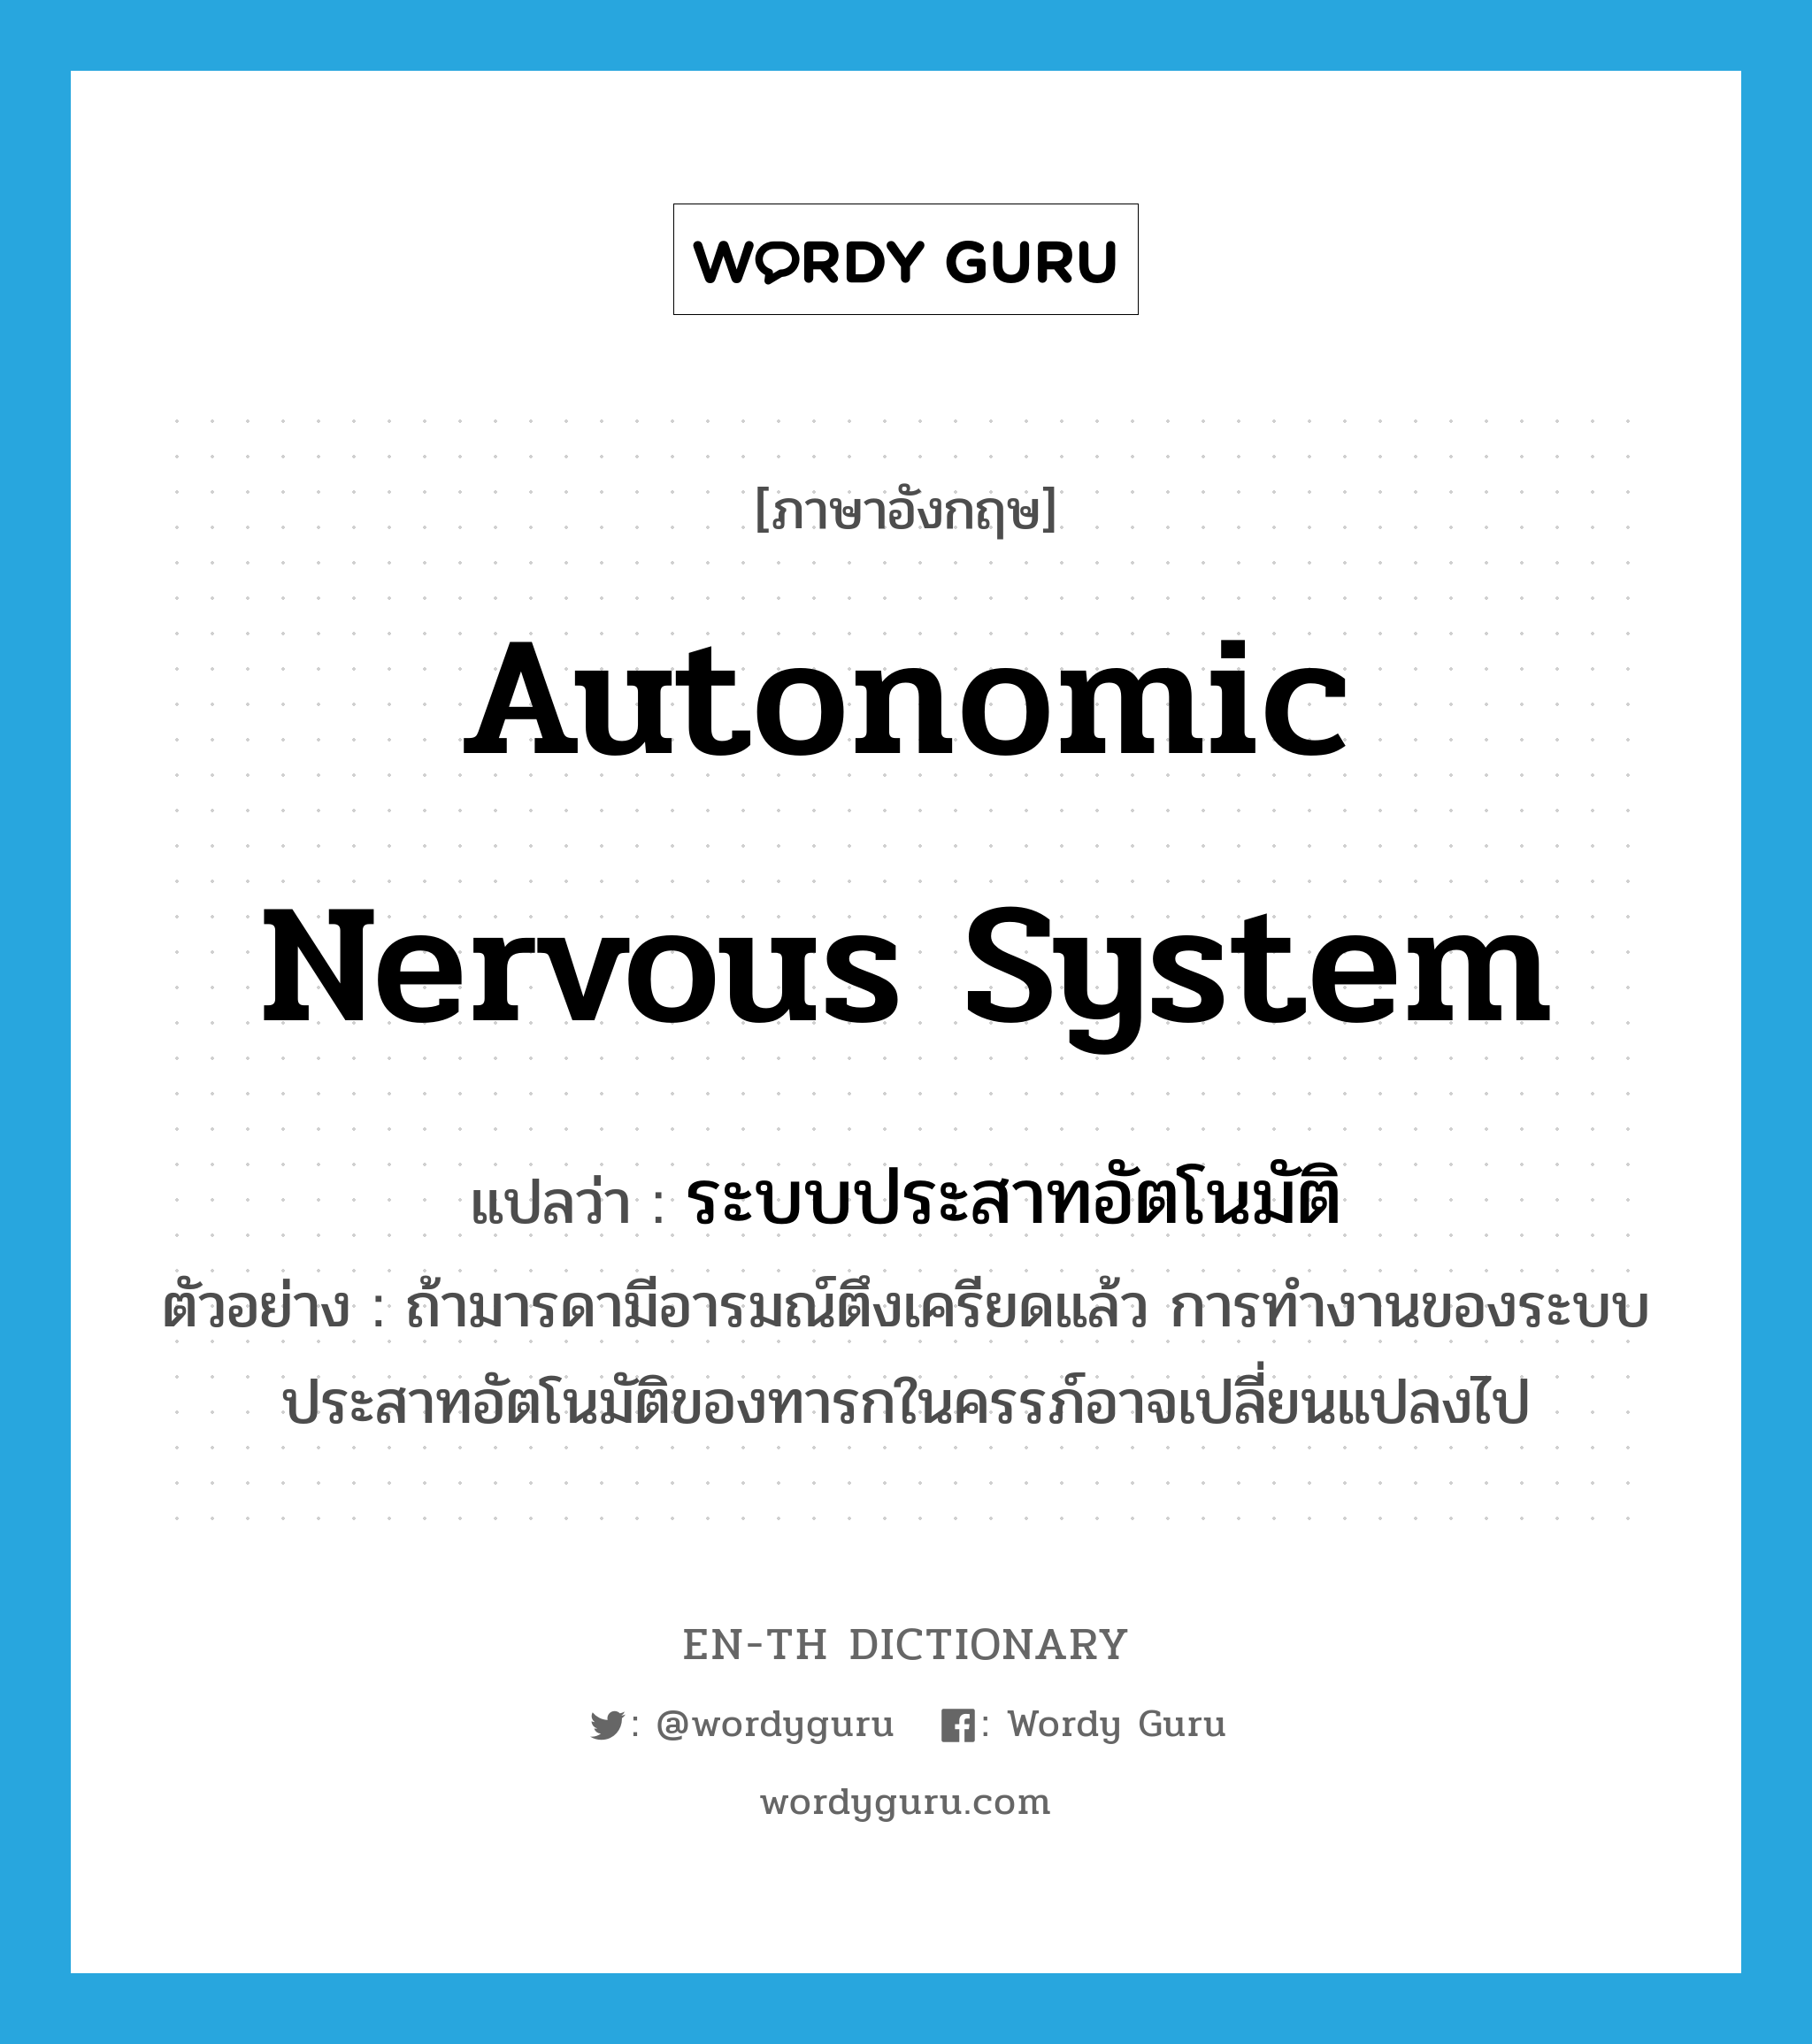 autonomic nervous system แปลว่า?, คำศัพท์ภาษาอังกฤษ autonomic nervous system แปลว่า ระบบประสาทอัตโนมัติ ประเภท N ตัวอย่าง ถ้ามารดามีอารมณ์ตึงเครียดแล้ว การทำงานของระบบประสาทอัตโนมัติของทารกในครรภ์อาจเปลี่ยนแปลงไป หมวด N